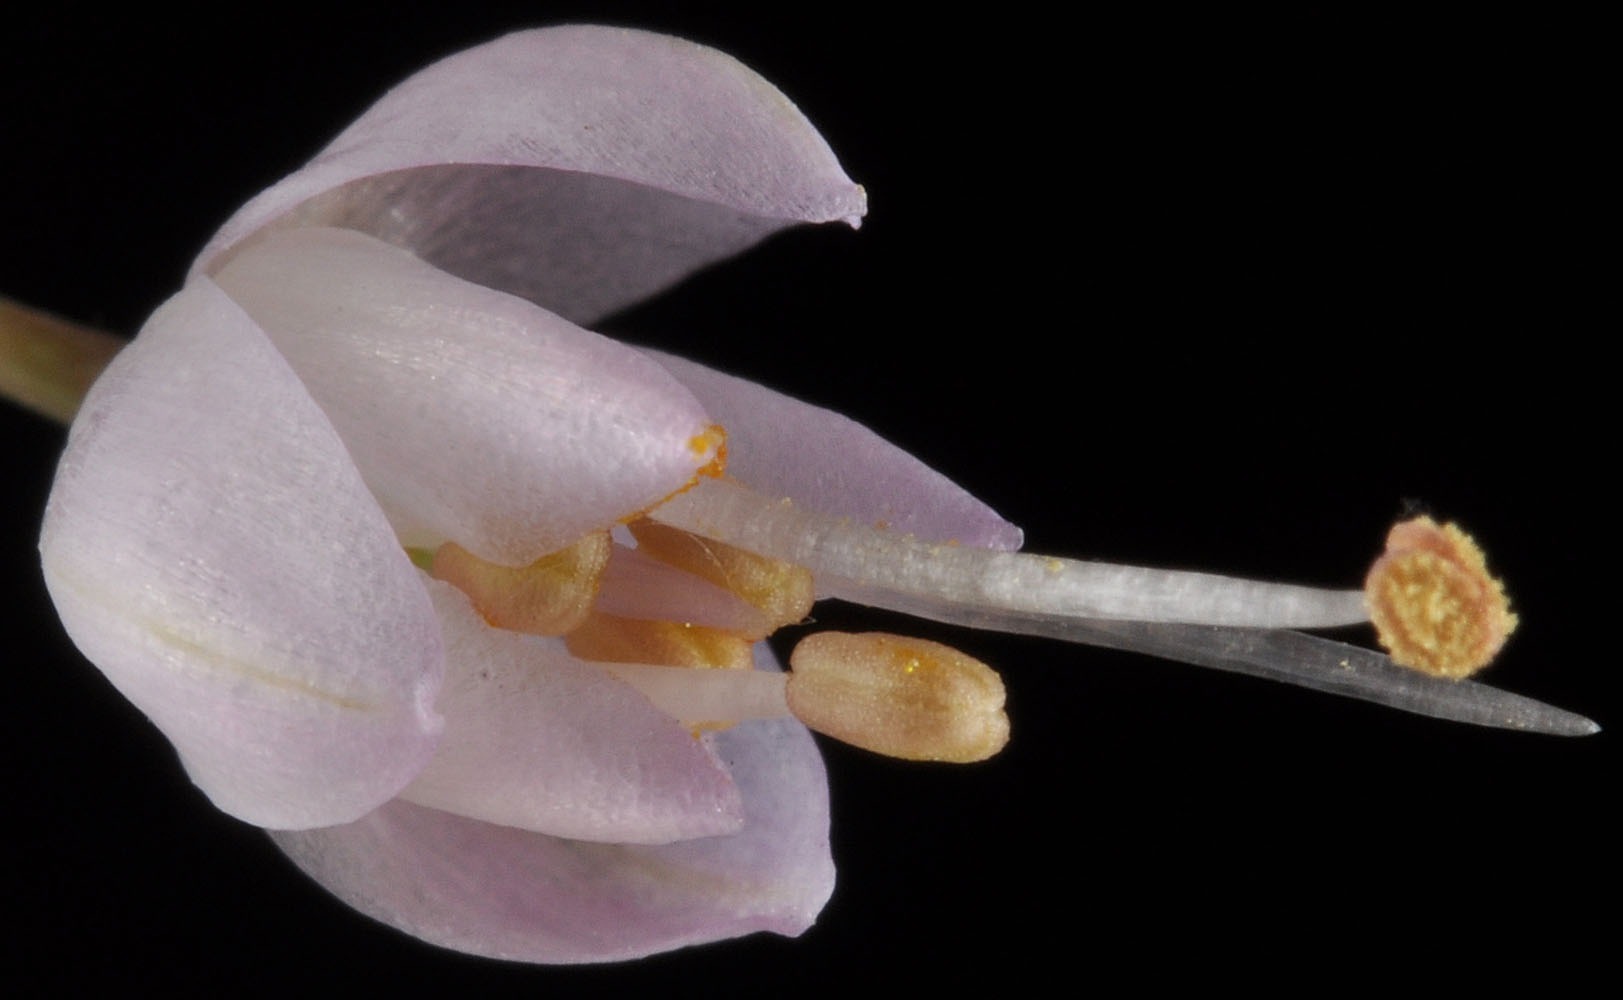 Flora of Eastern Washington Image: Allium cernuum